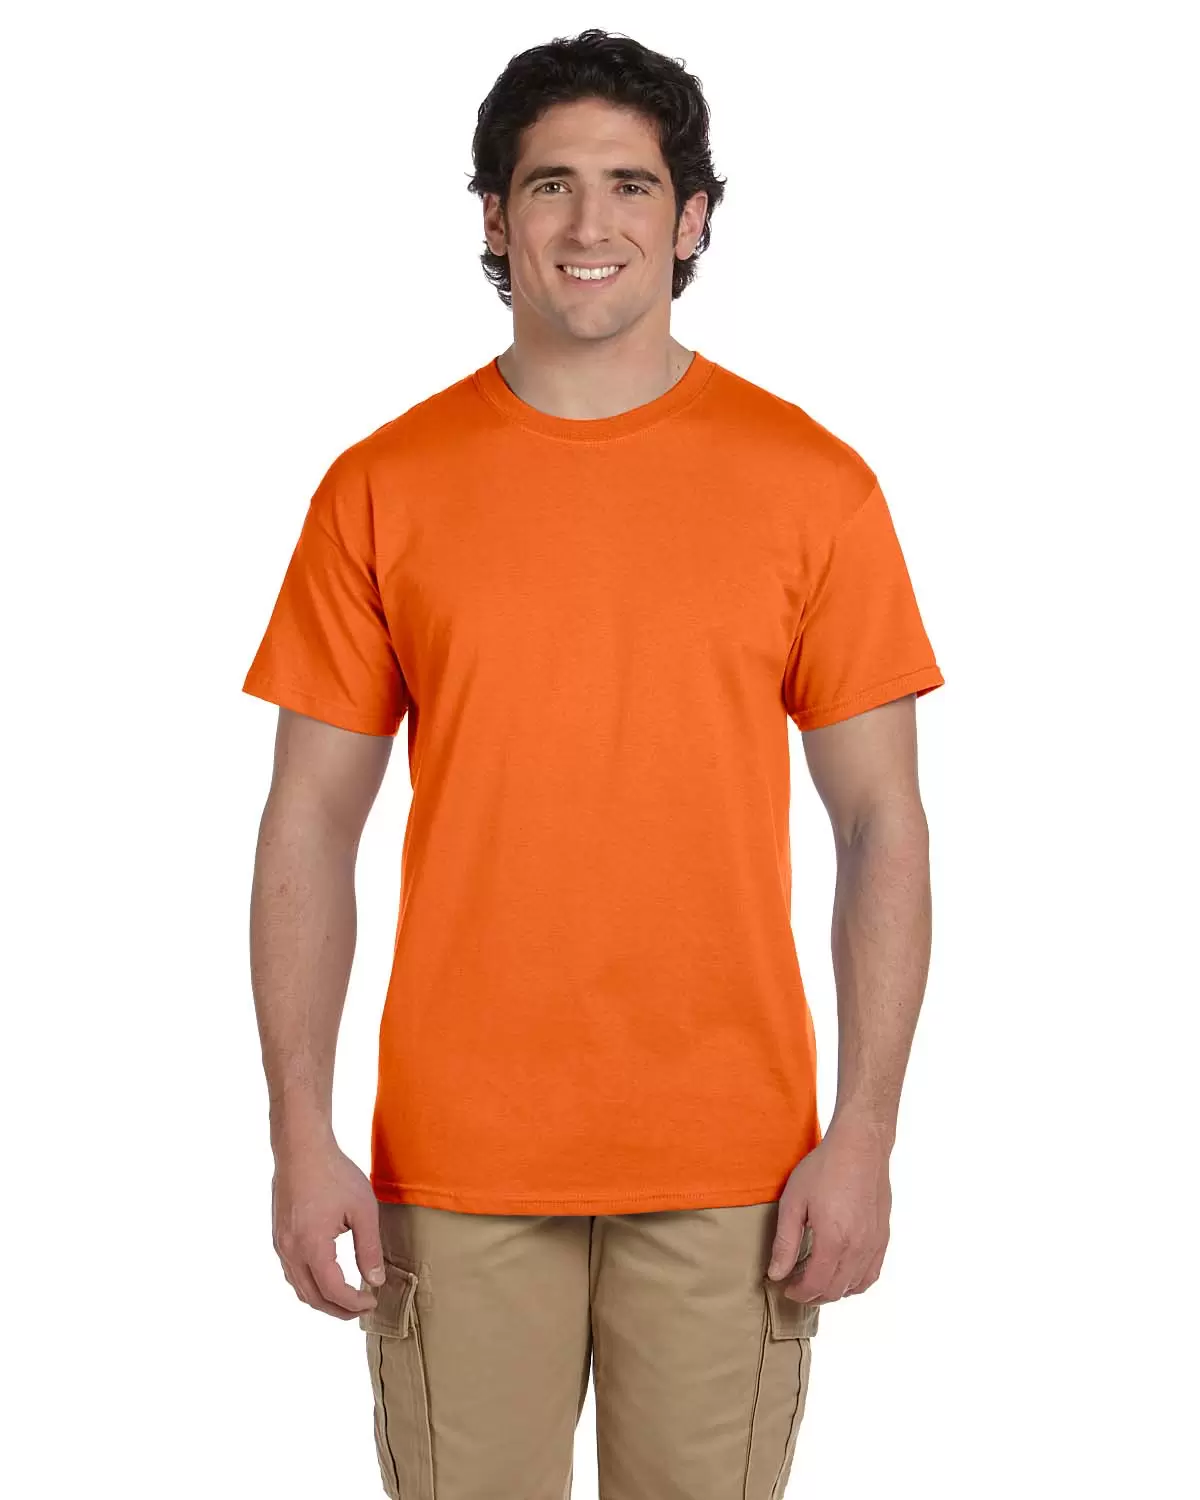 Promotional Hanes 50/50 ComfortBlend T-Shirt - Colors